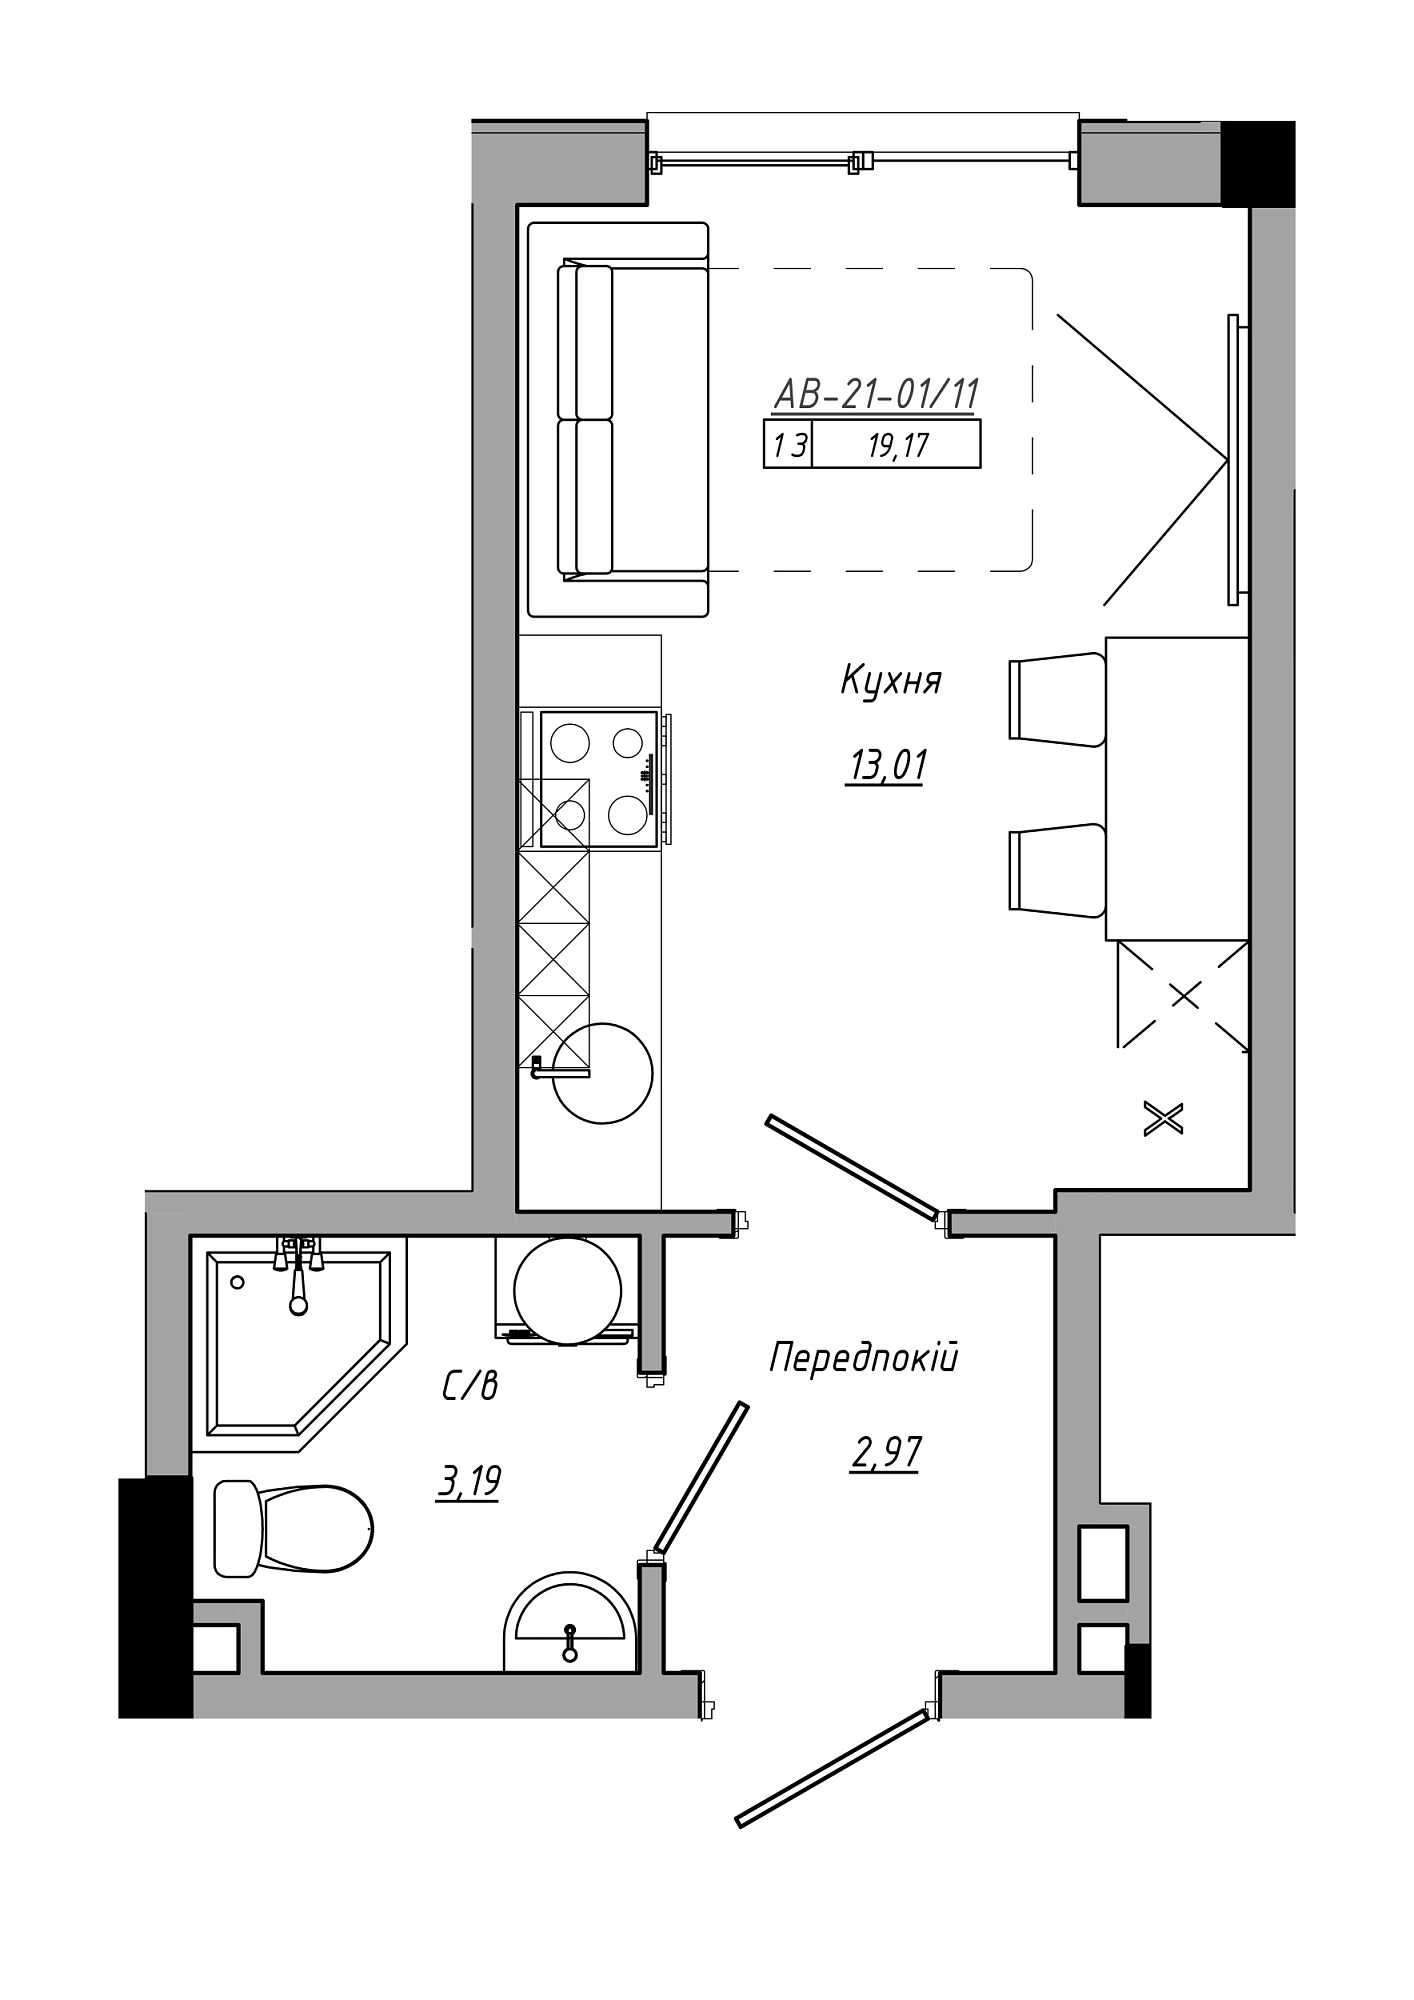 Планування Smart-квартира площею 19.17м2, AB-21-01/00011.